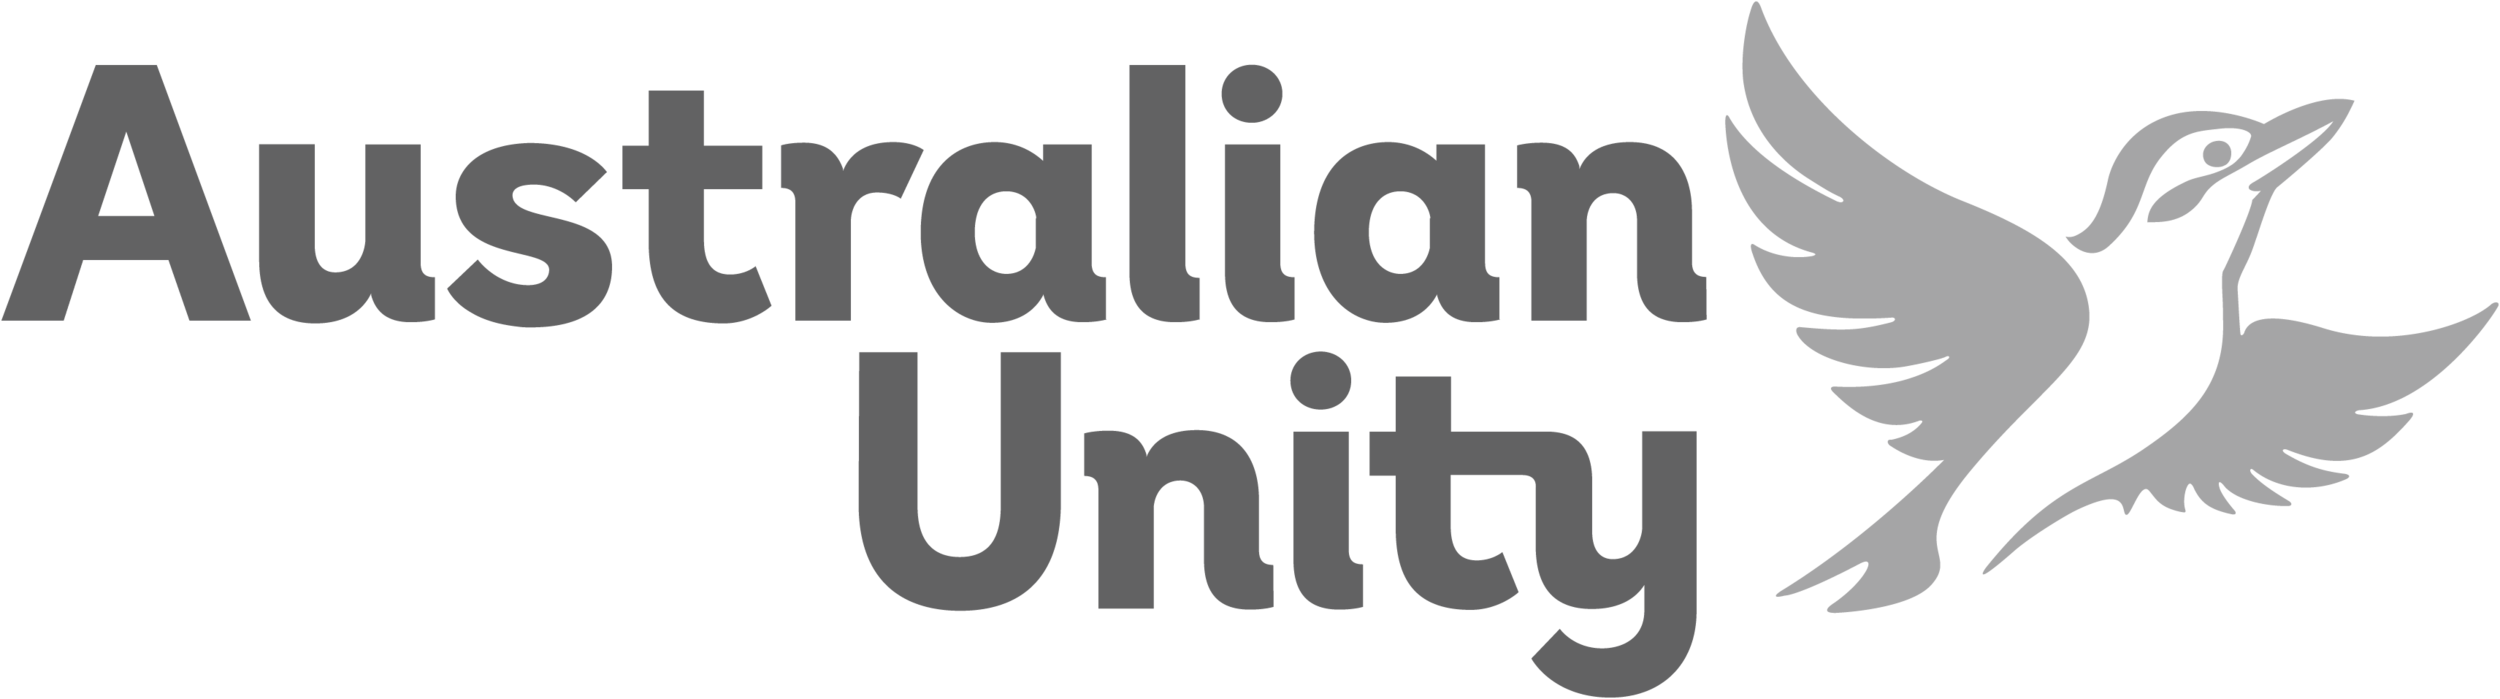 australian-unity.png